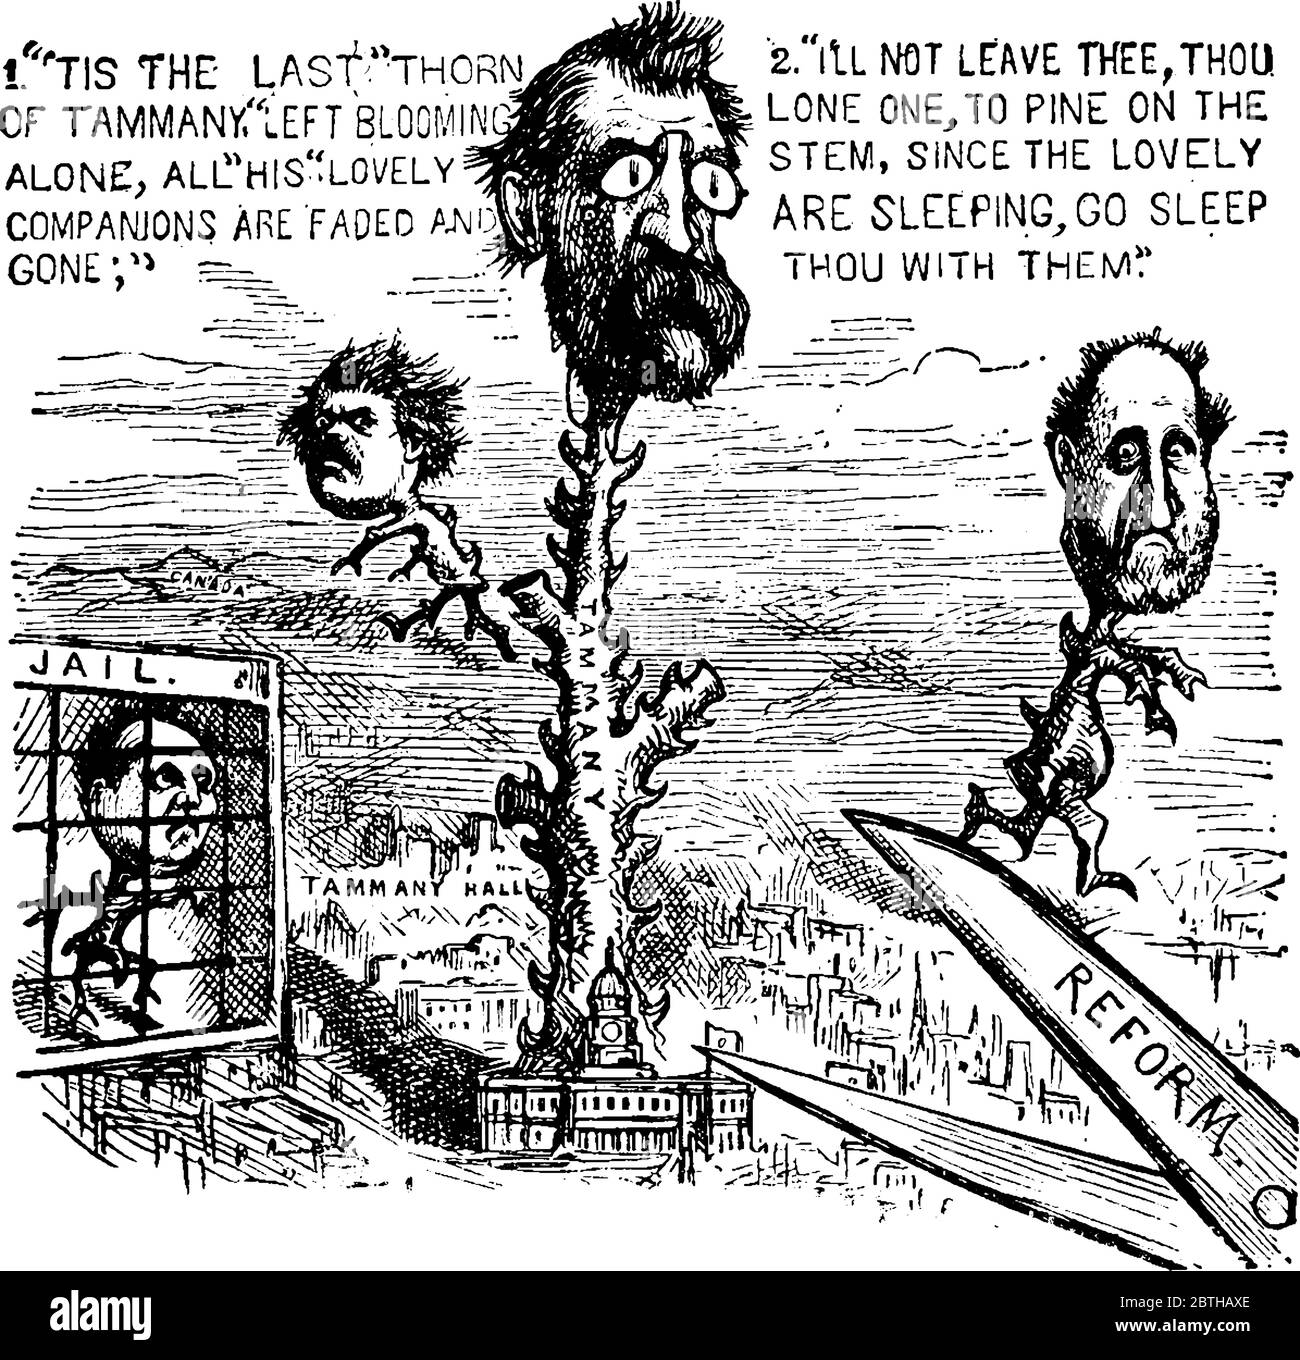 Thomas Nast ha intitolato questo cartone animato come l'ultimo Torno d'Estate, mostrando la sconfitta di Tammany, tutti i suoi compagni sono sbiaditi e andati e il sindaco di sinistra Oake Illustrazione Vettoriale